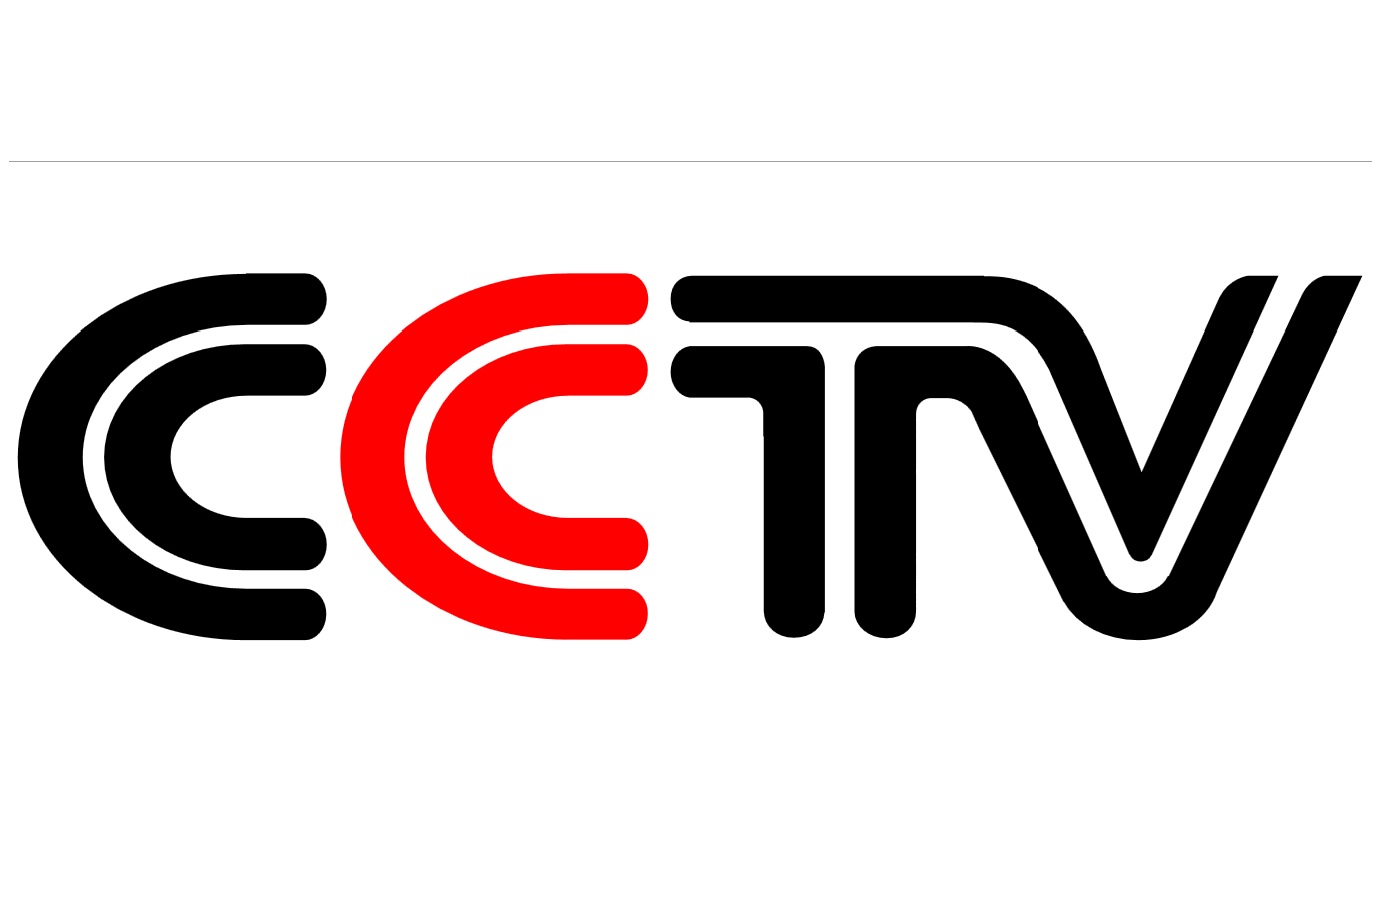 cctv 4 kamera megfigyelő rendszer használati útmutató 4